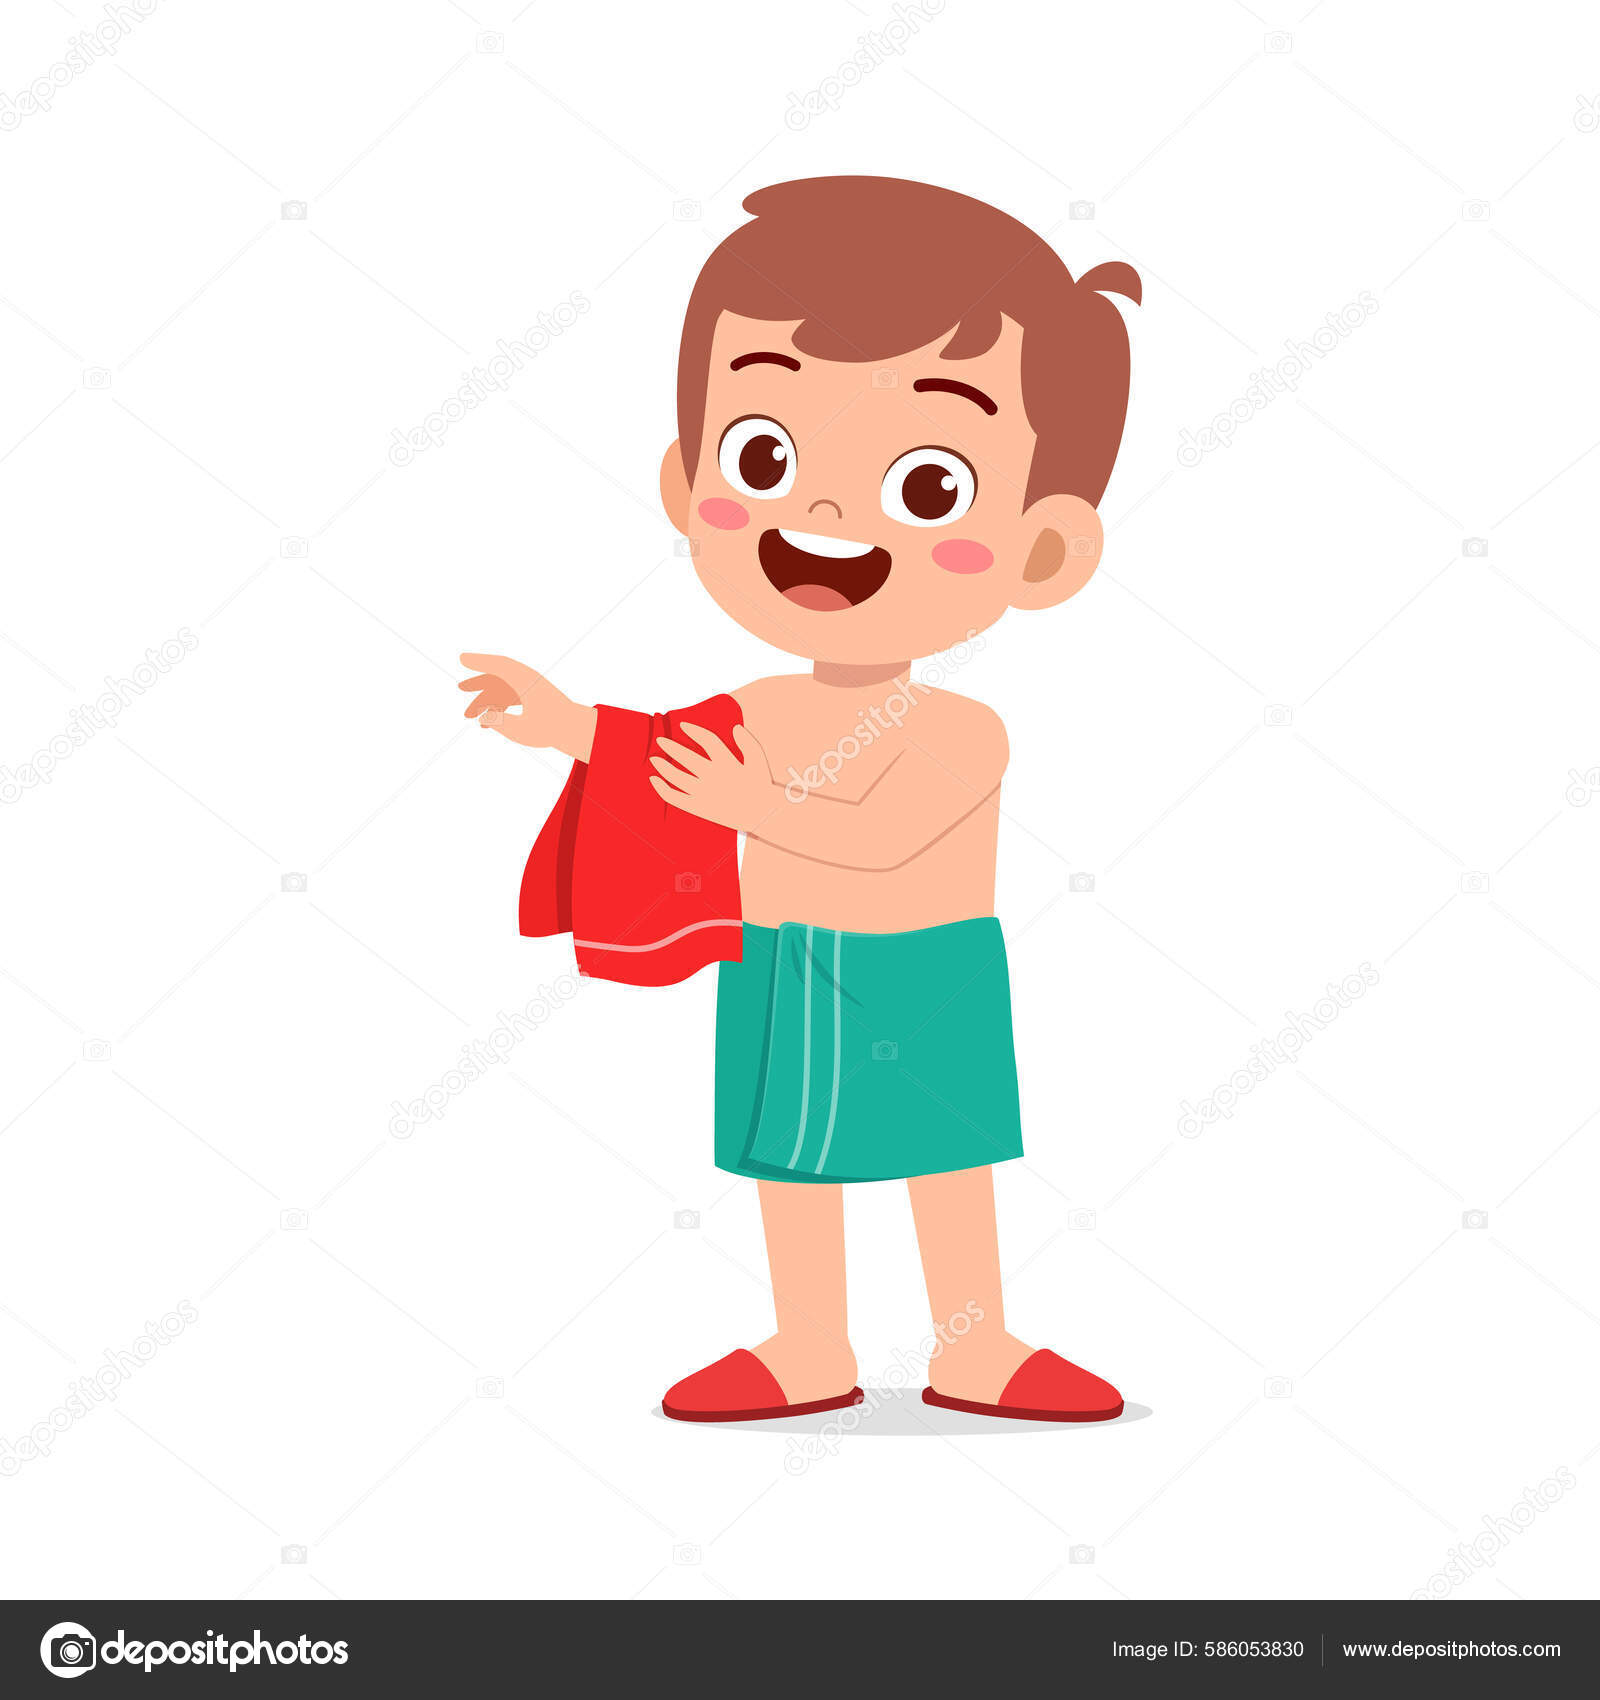 https://st.depositphotos.com/27811286/58605/v/1600/depositphotos_586053830-stock-illustration-little-kid-dry-body-towel.jpg